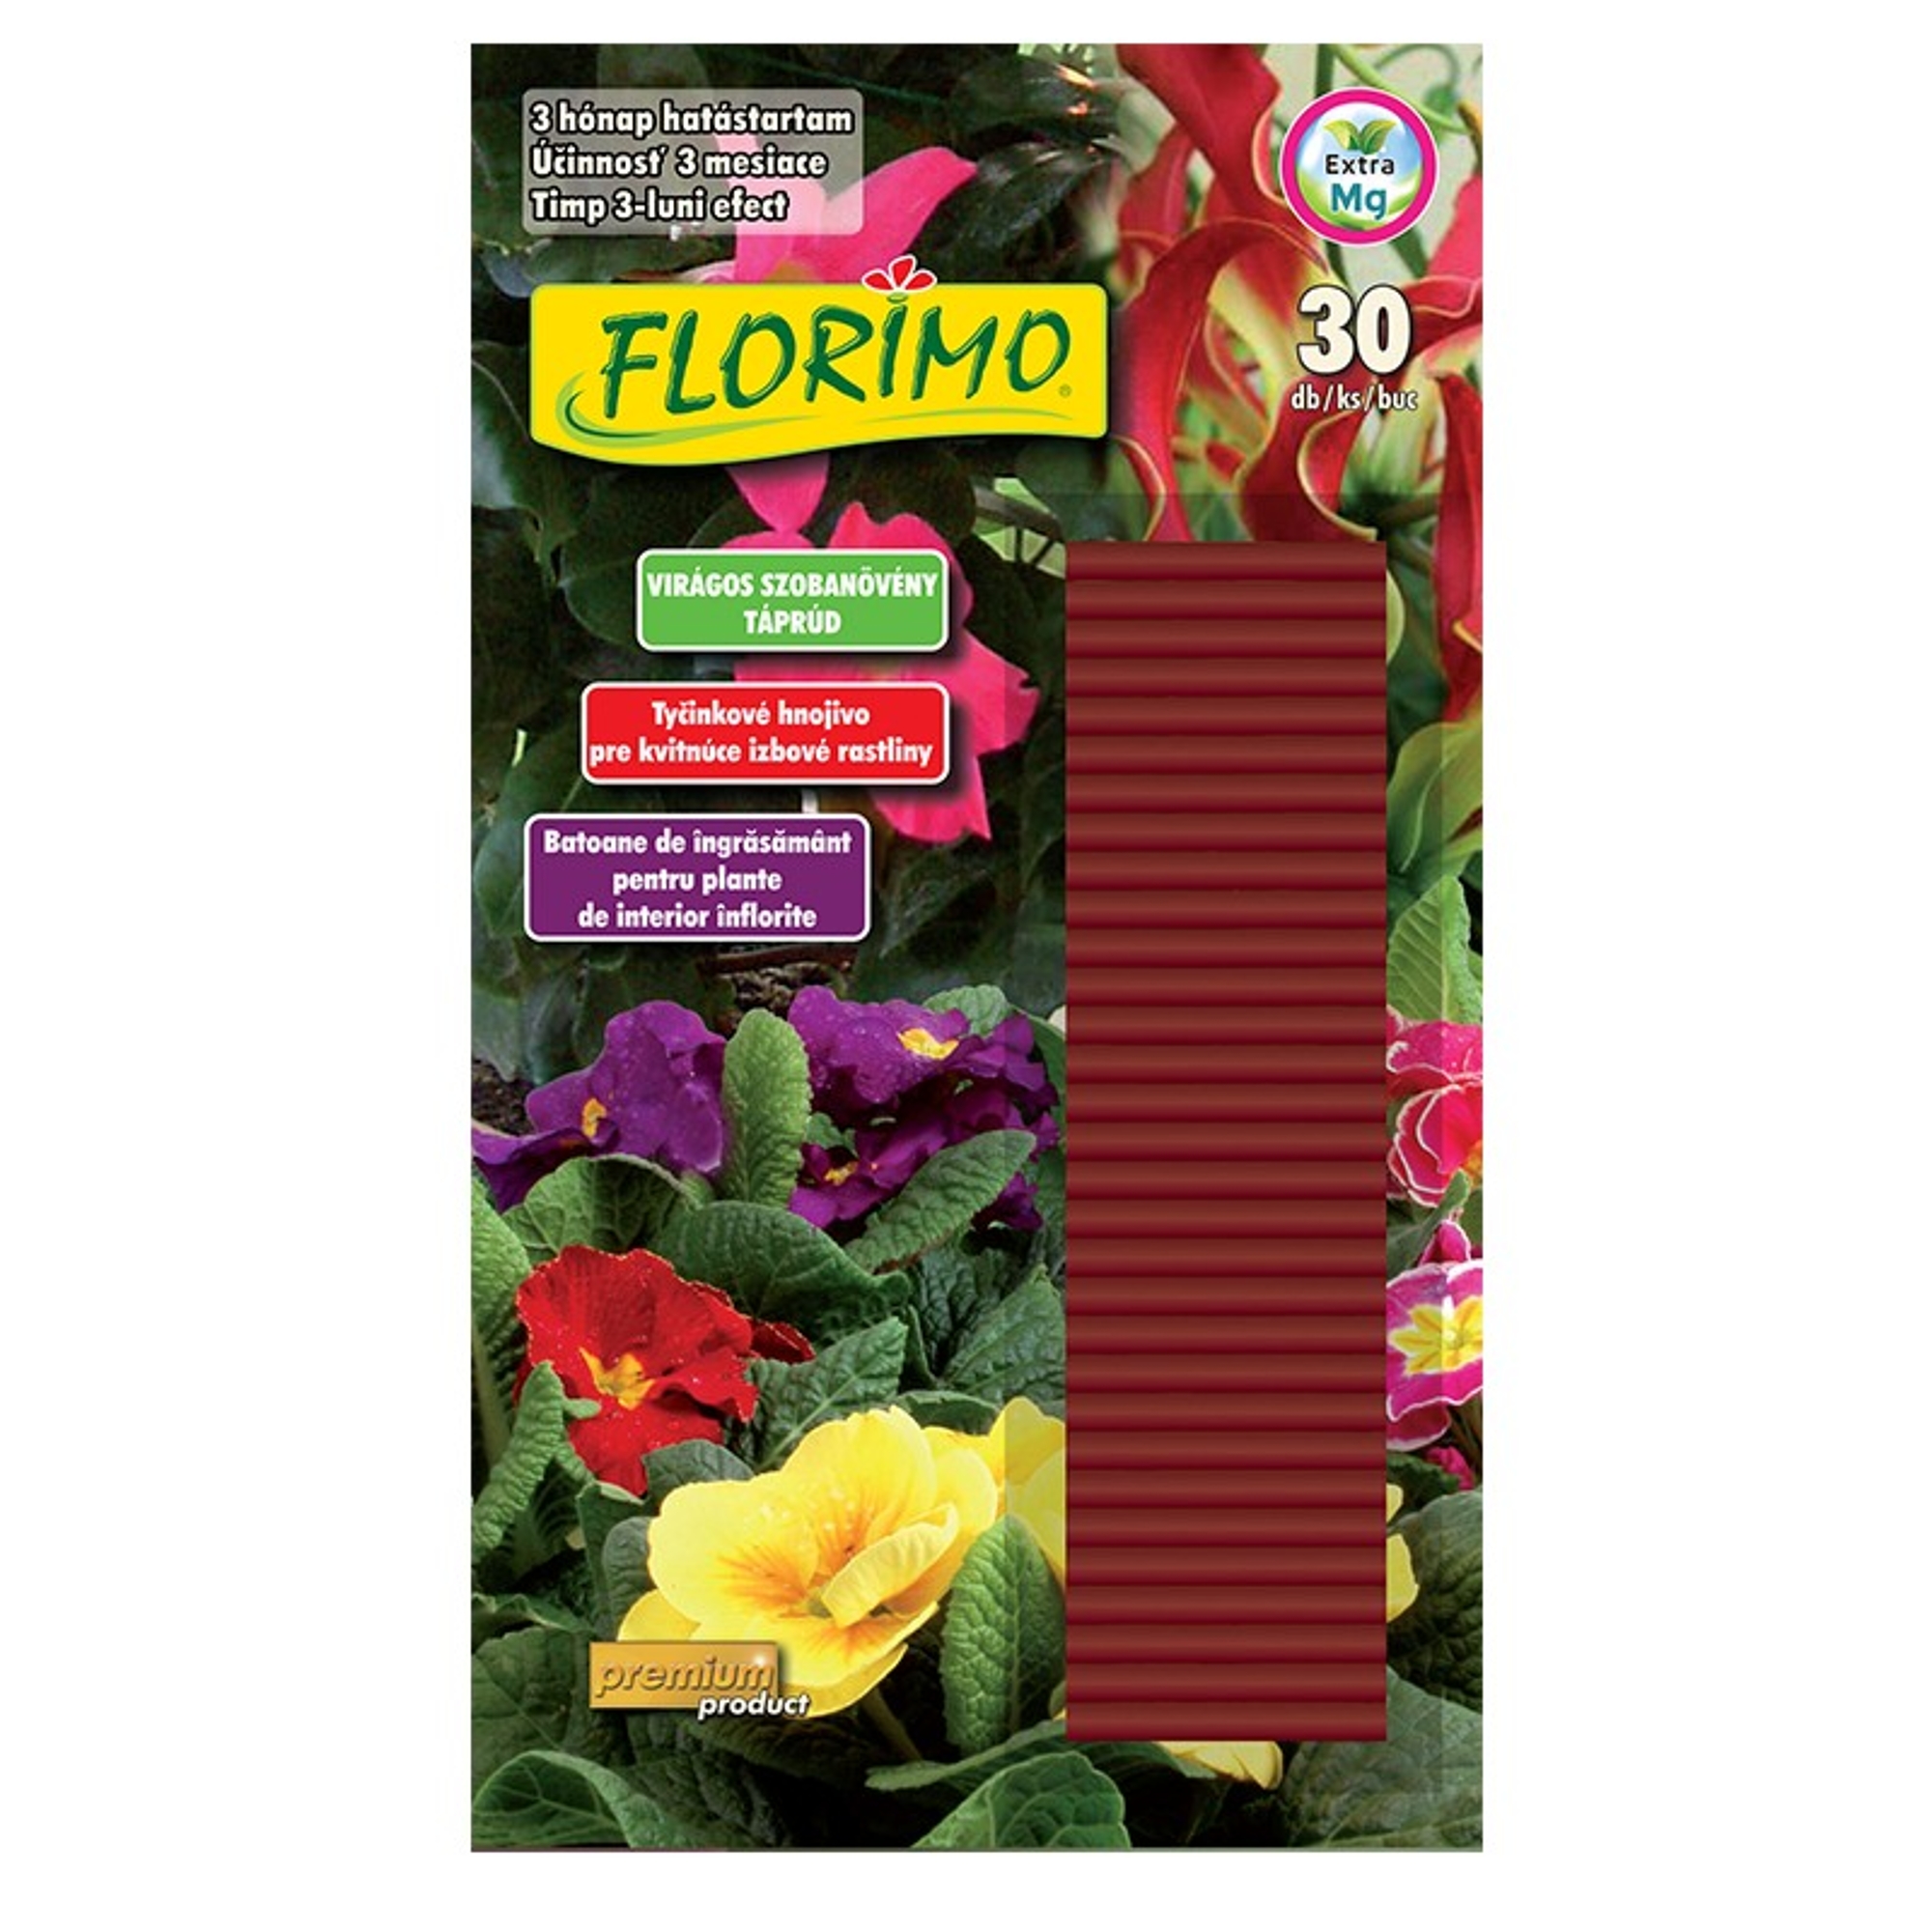 Florimo virágos szobanövény táprúd 30 db